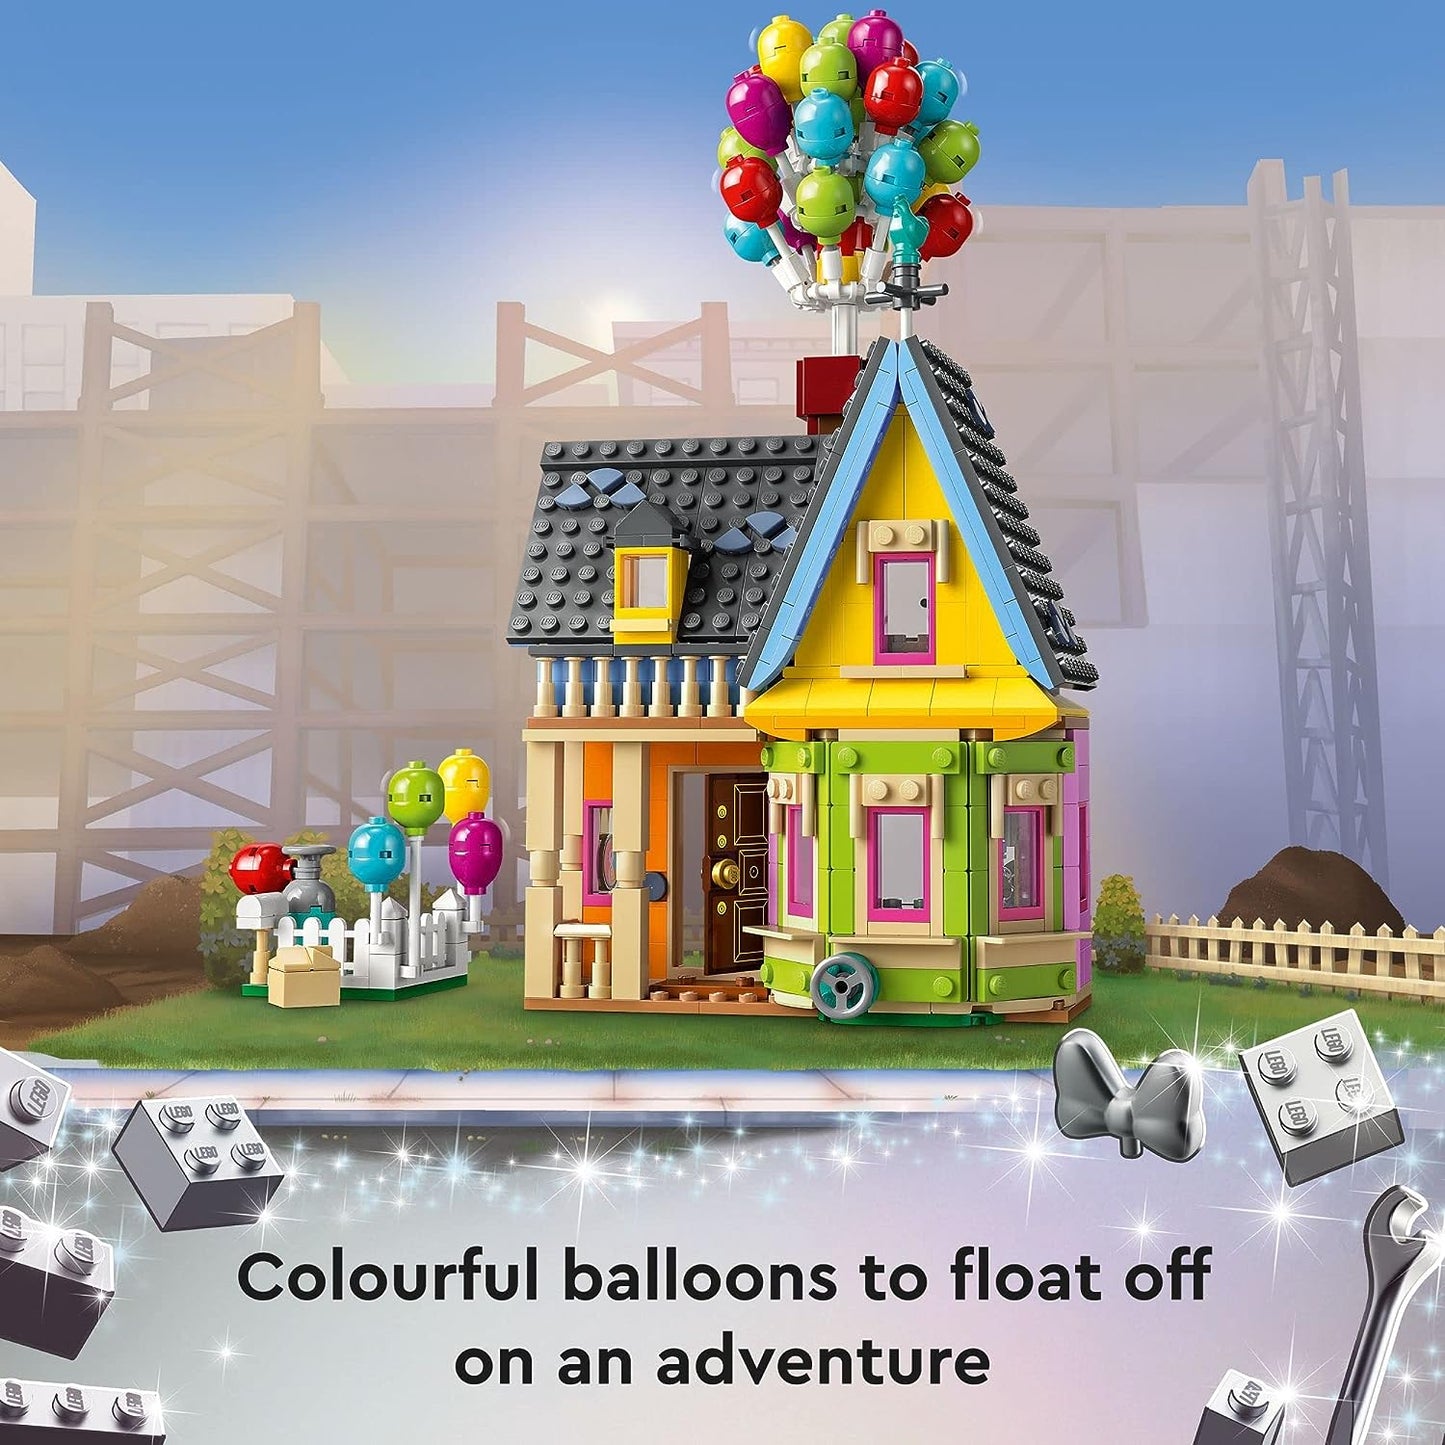 LEGO Disney - Up’House 43217